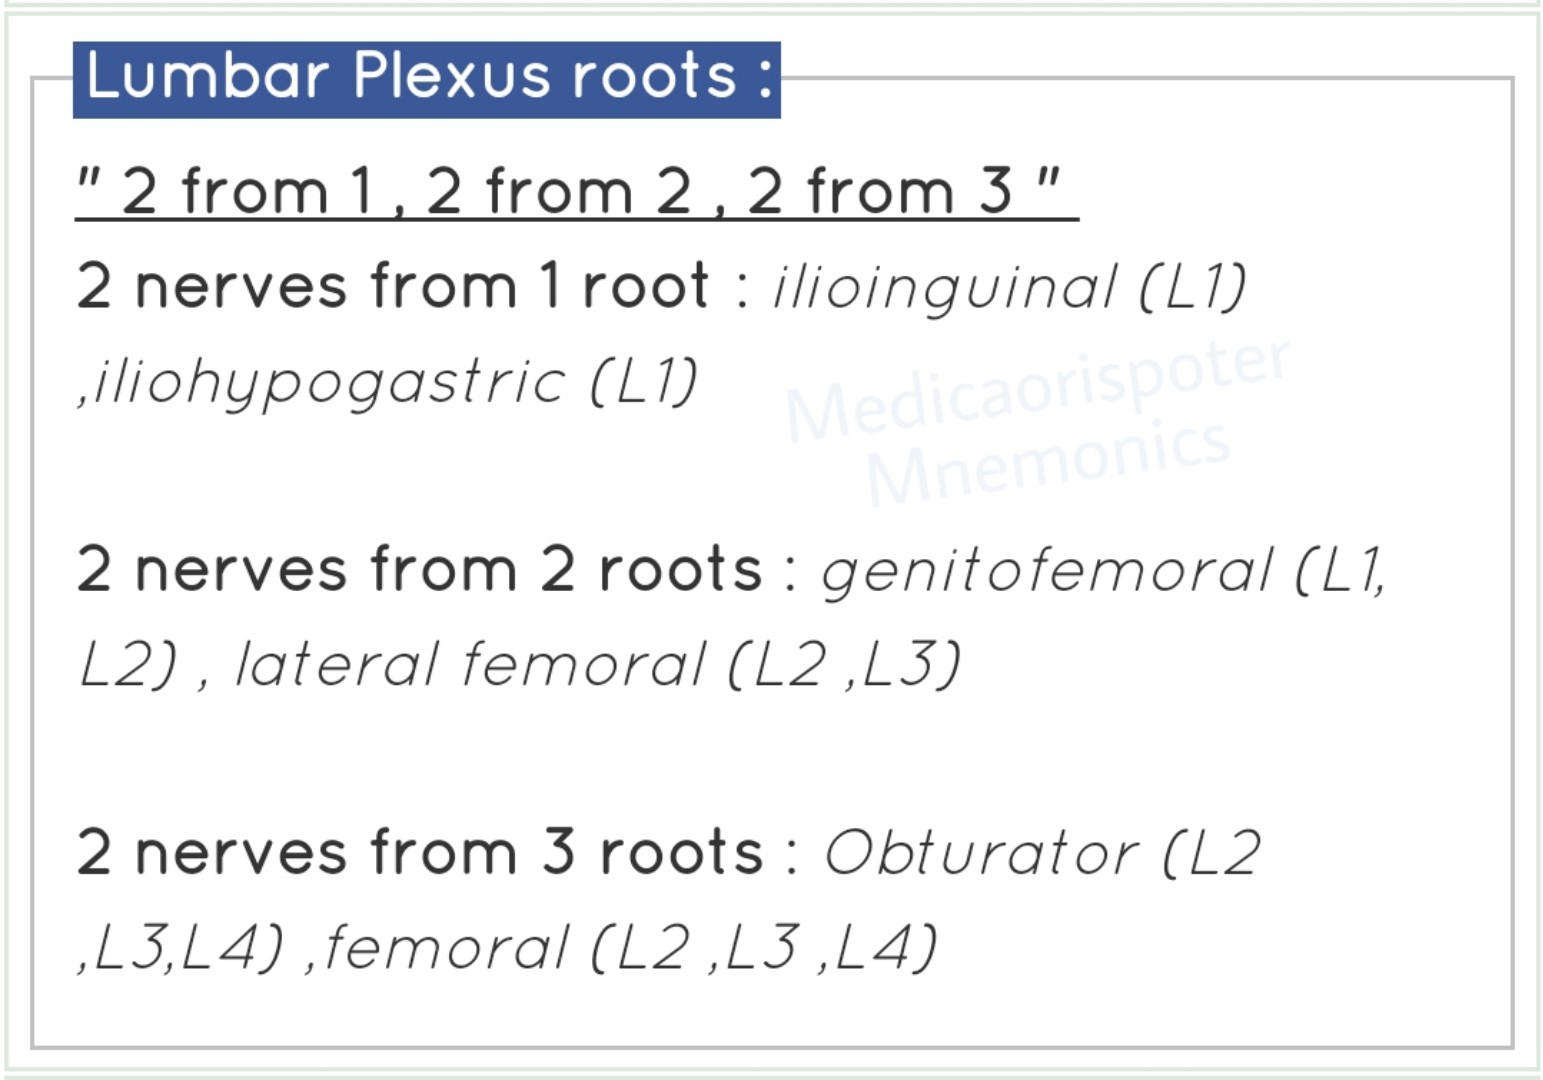 Roots of Lumbar Plexus